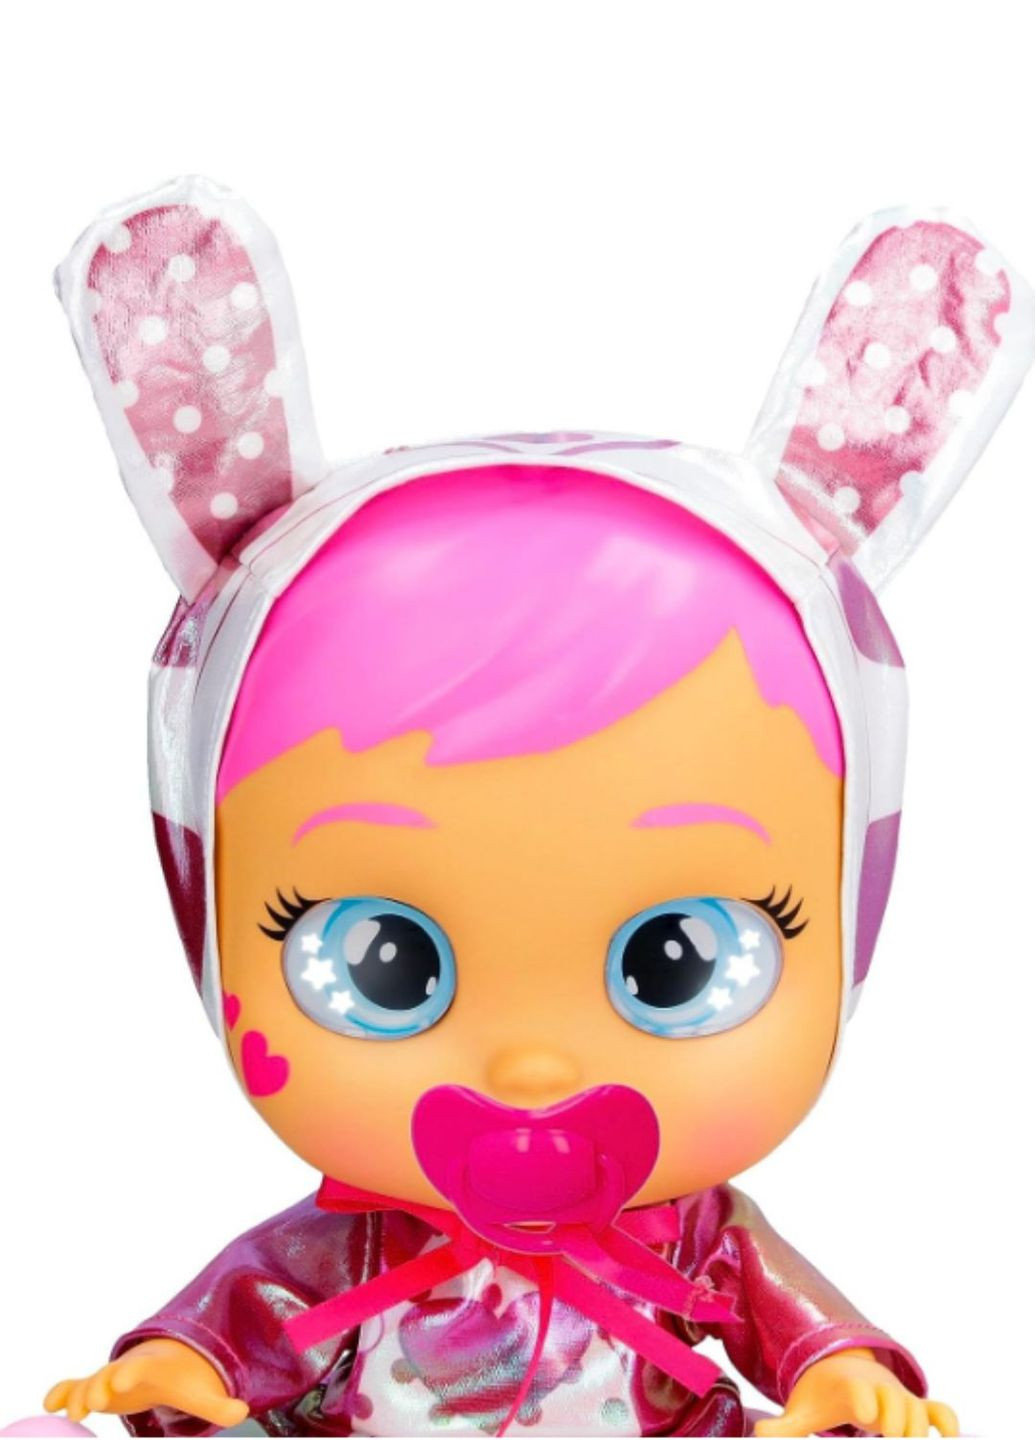 Интерактивная кукла Cry Babies Stars Coney Звездная Лошади зайчик, 10 звуков, от 18 мес IMC Toys (293850372)